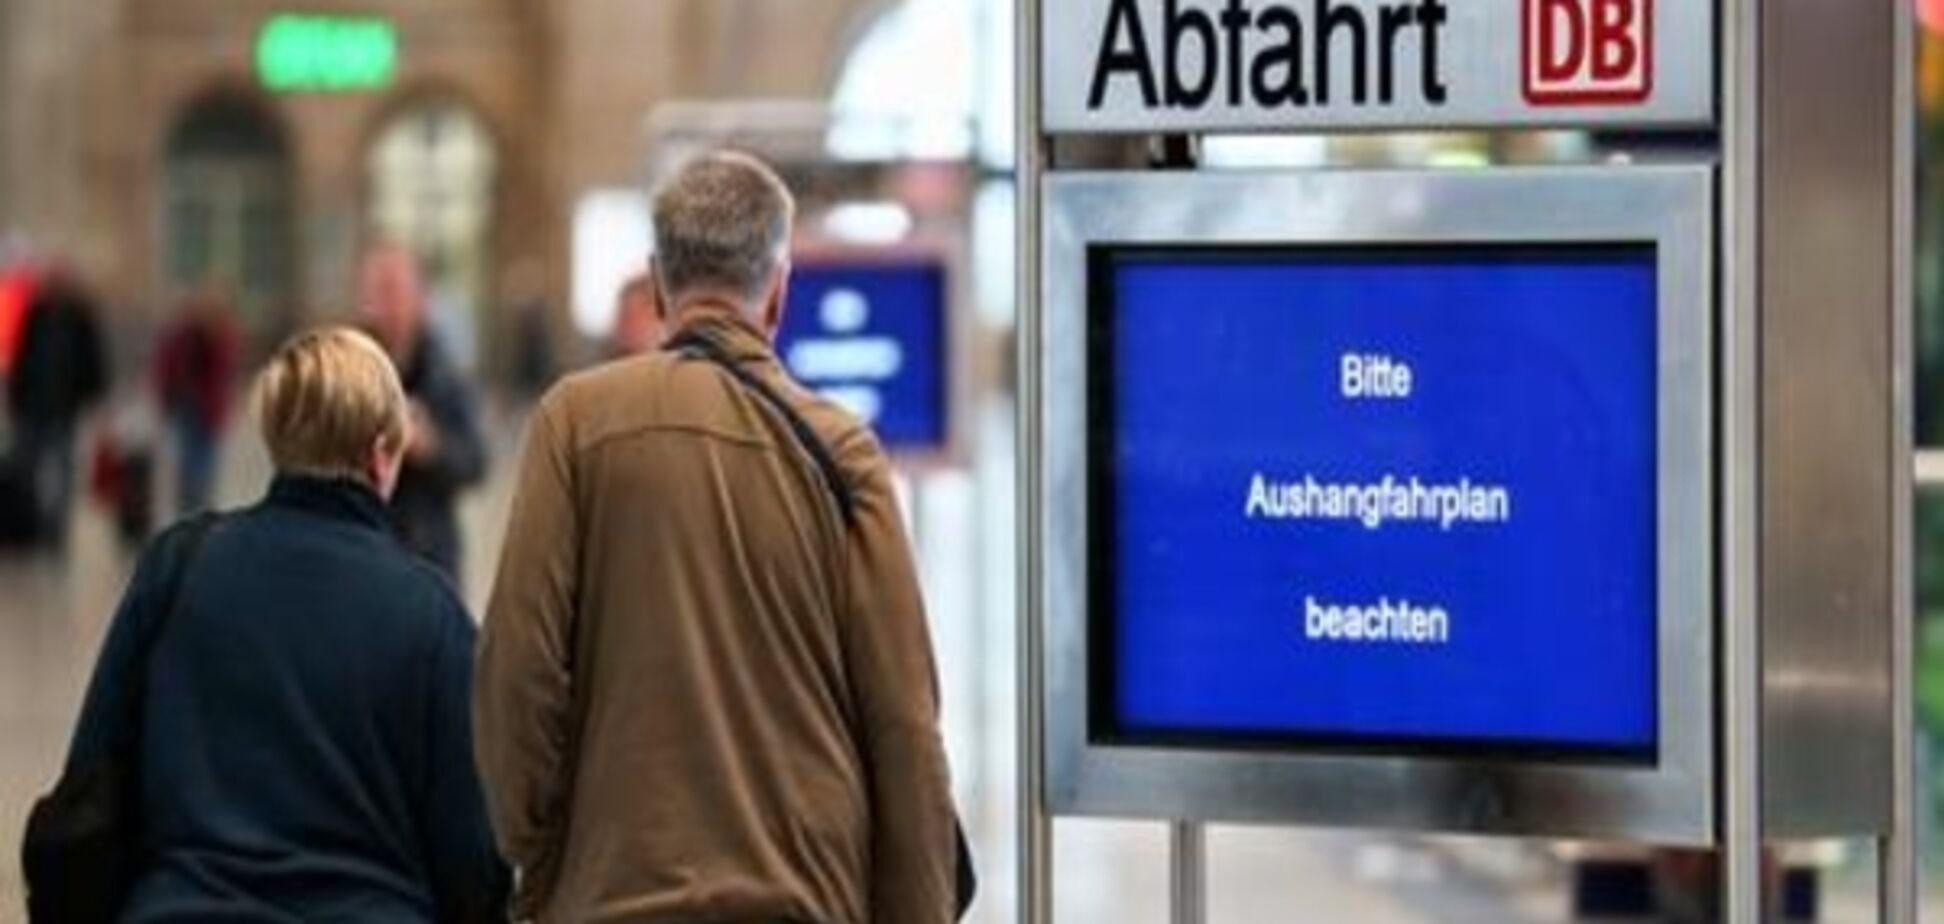 Німецька залізниця Deutsche Bahn хоче запровадити безквиткову оплату за проїзд